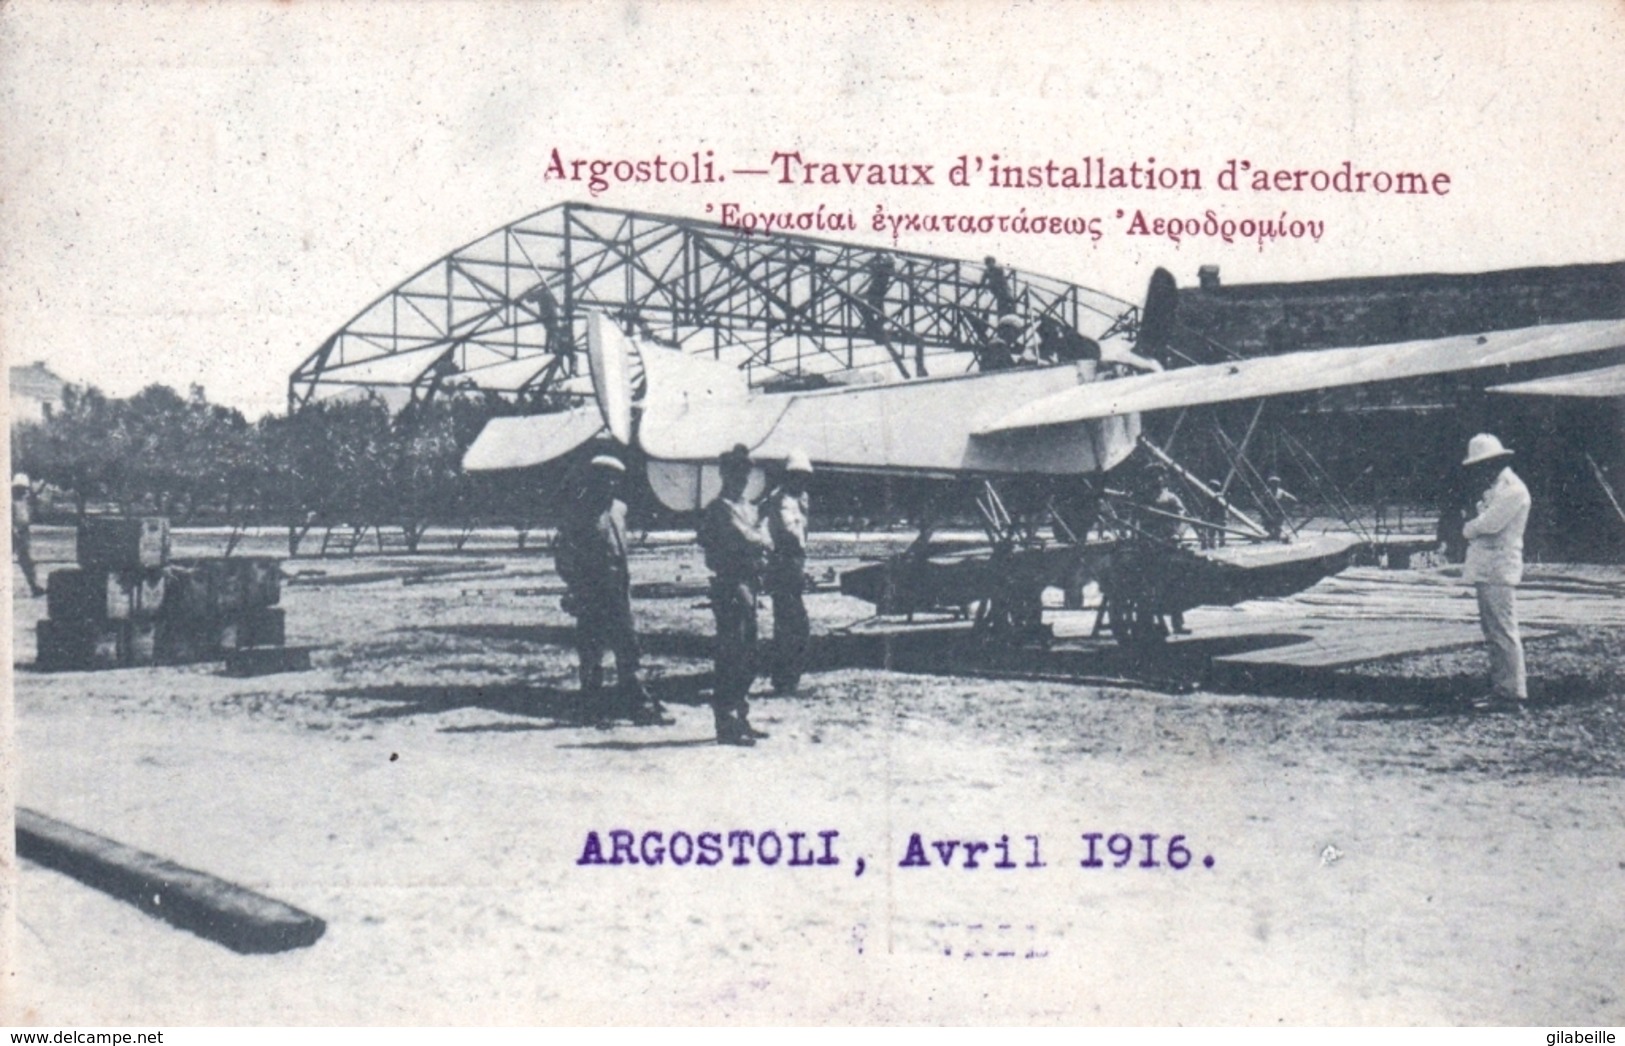 Ελλάδα - Grece - ARGOSTOLI ( Cephalonie ) - Travaux D Installation D Aerodrome - Avril 1916 - Greece